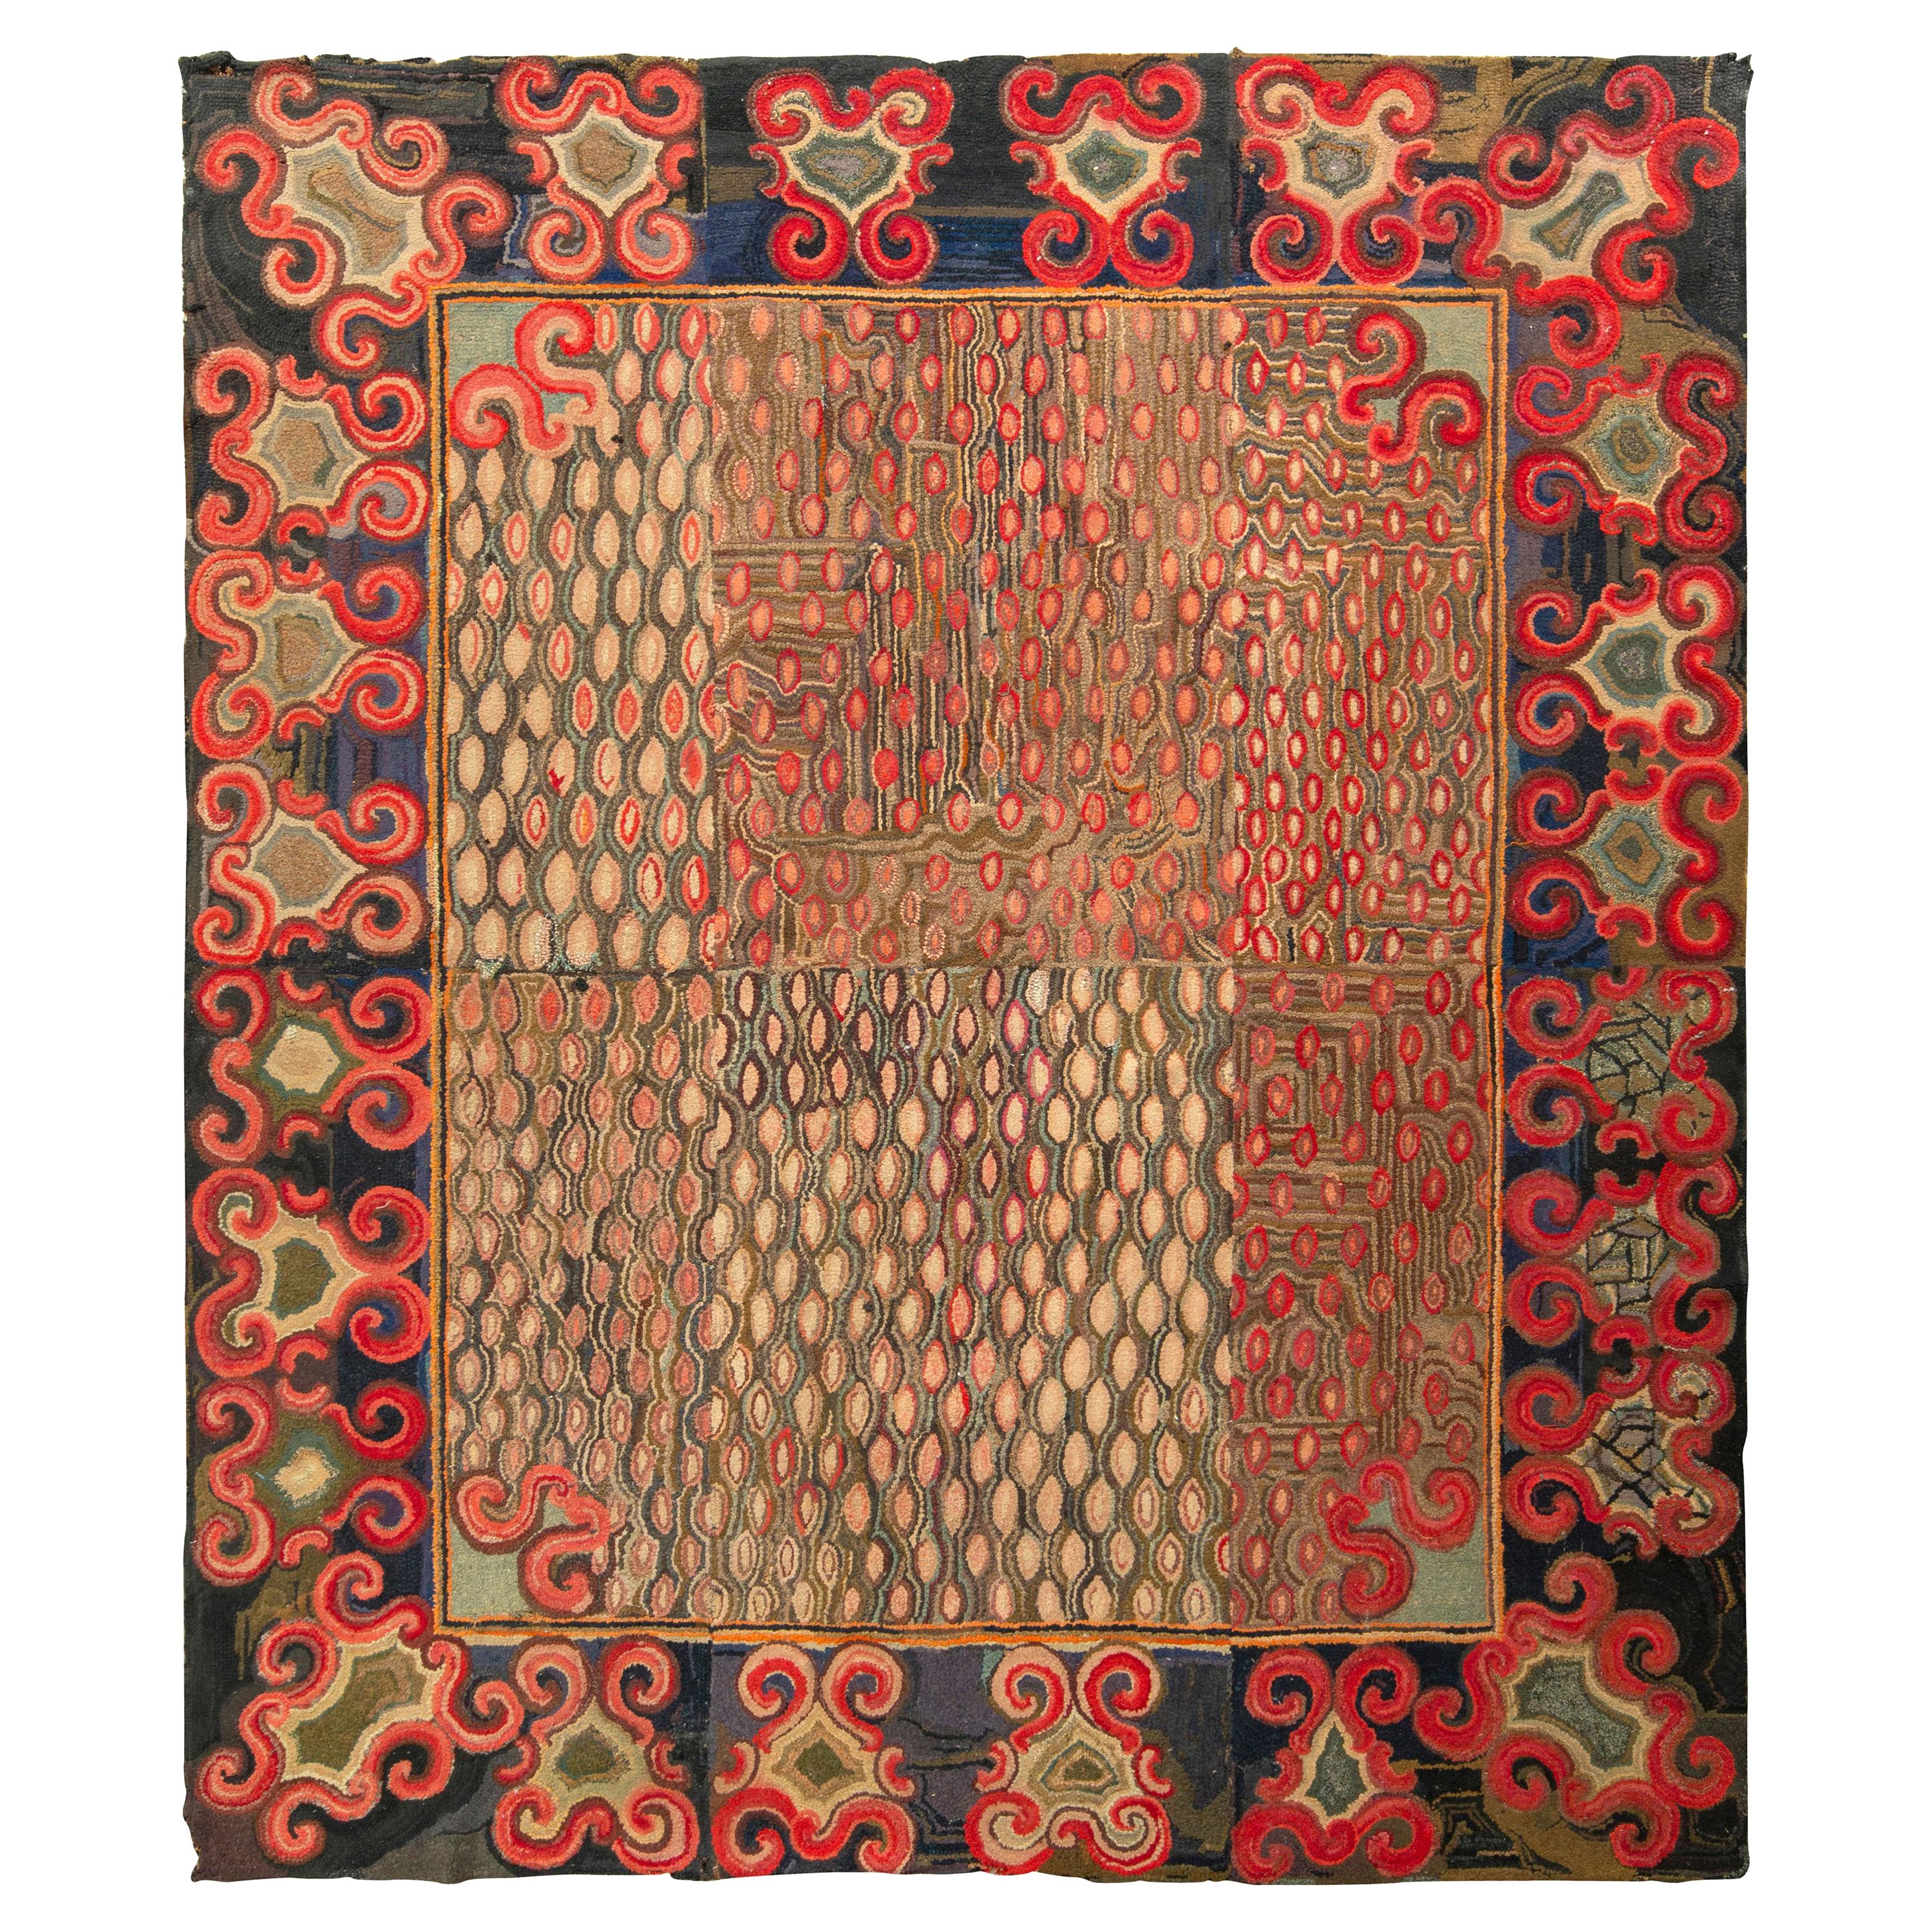 Antiker handgefertigter Teppich mit geometrischem Muster in Rot, Beige und Braun